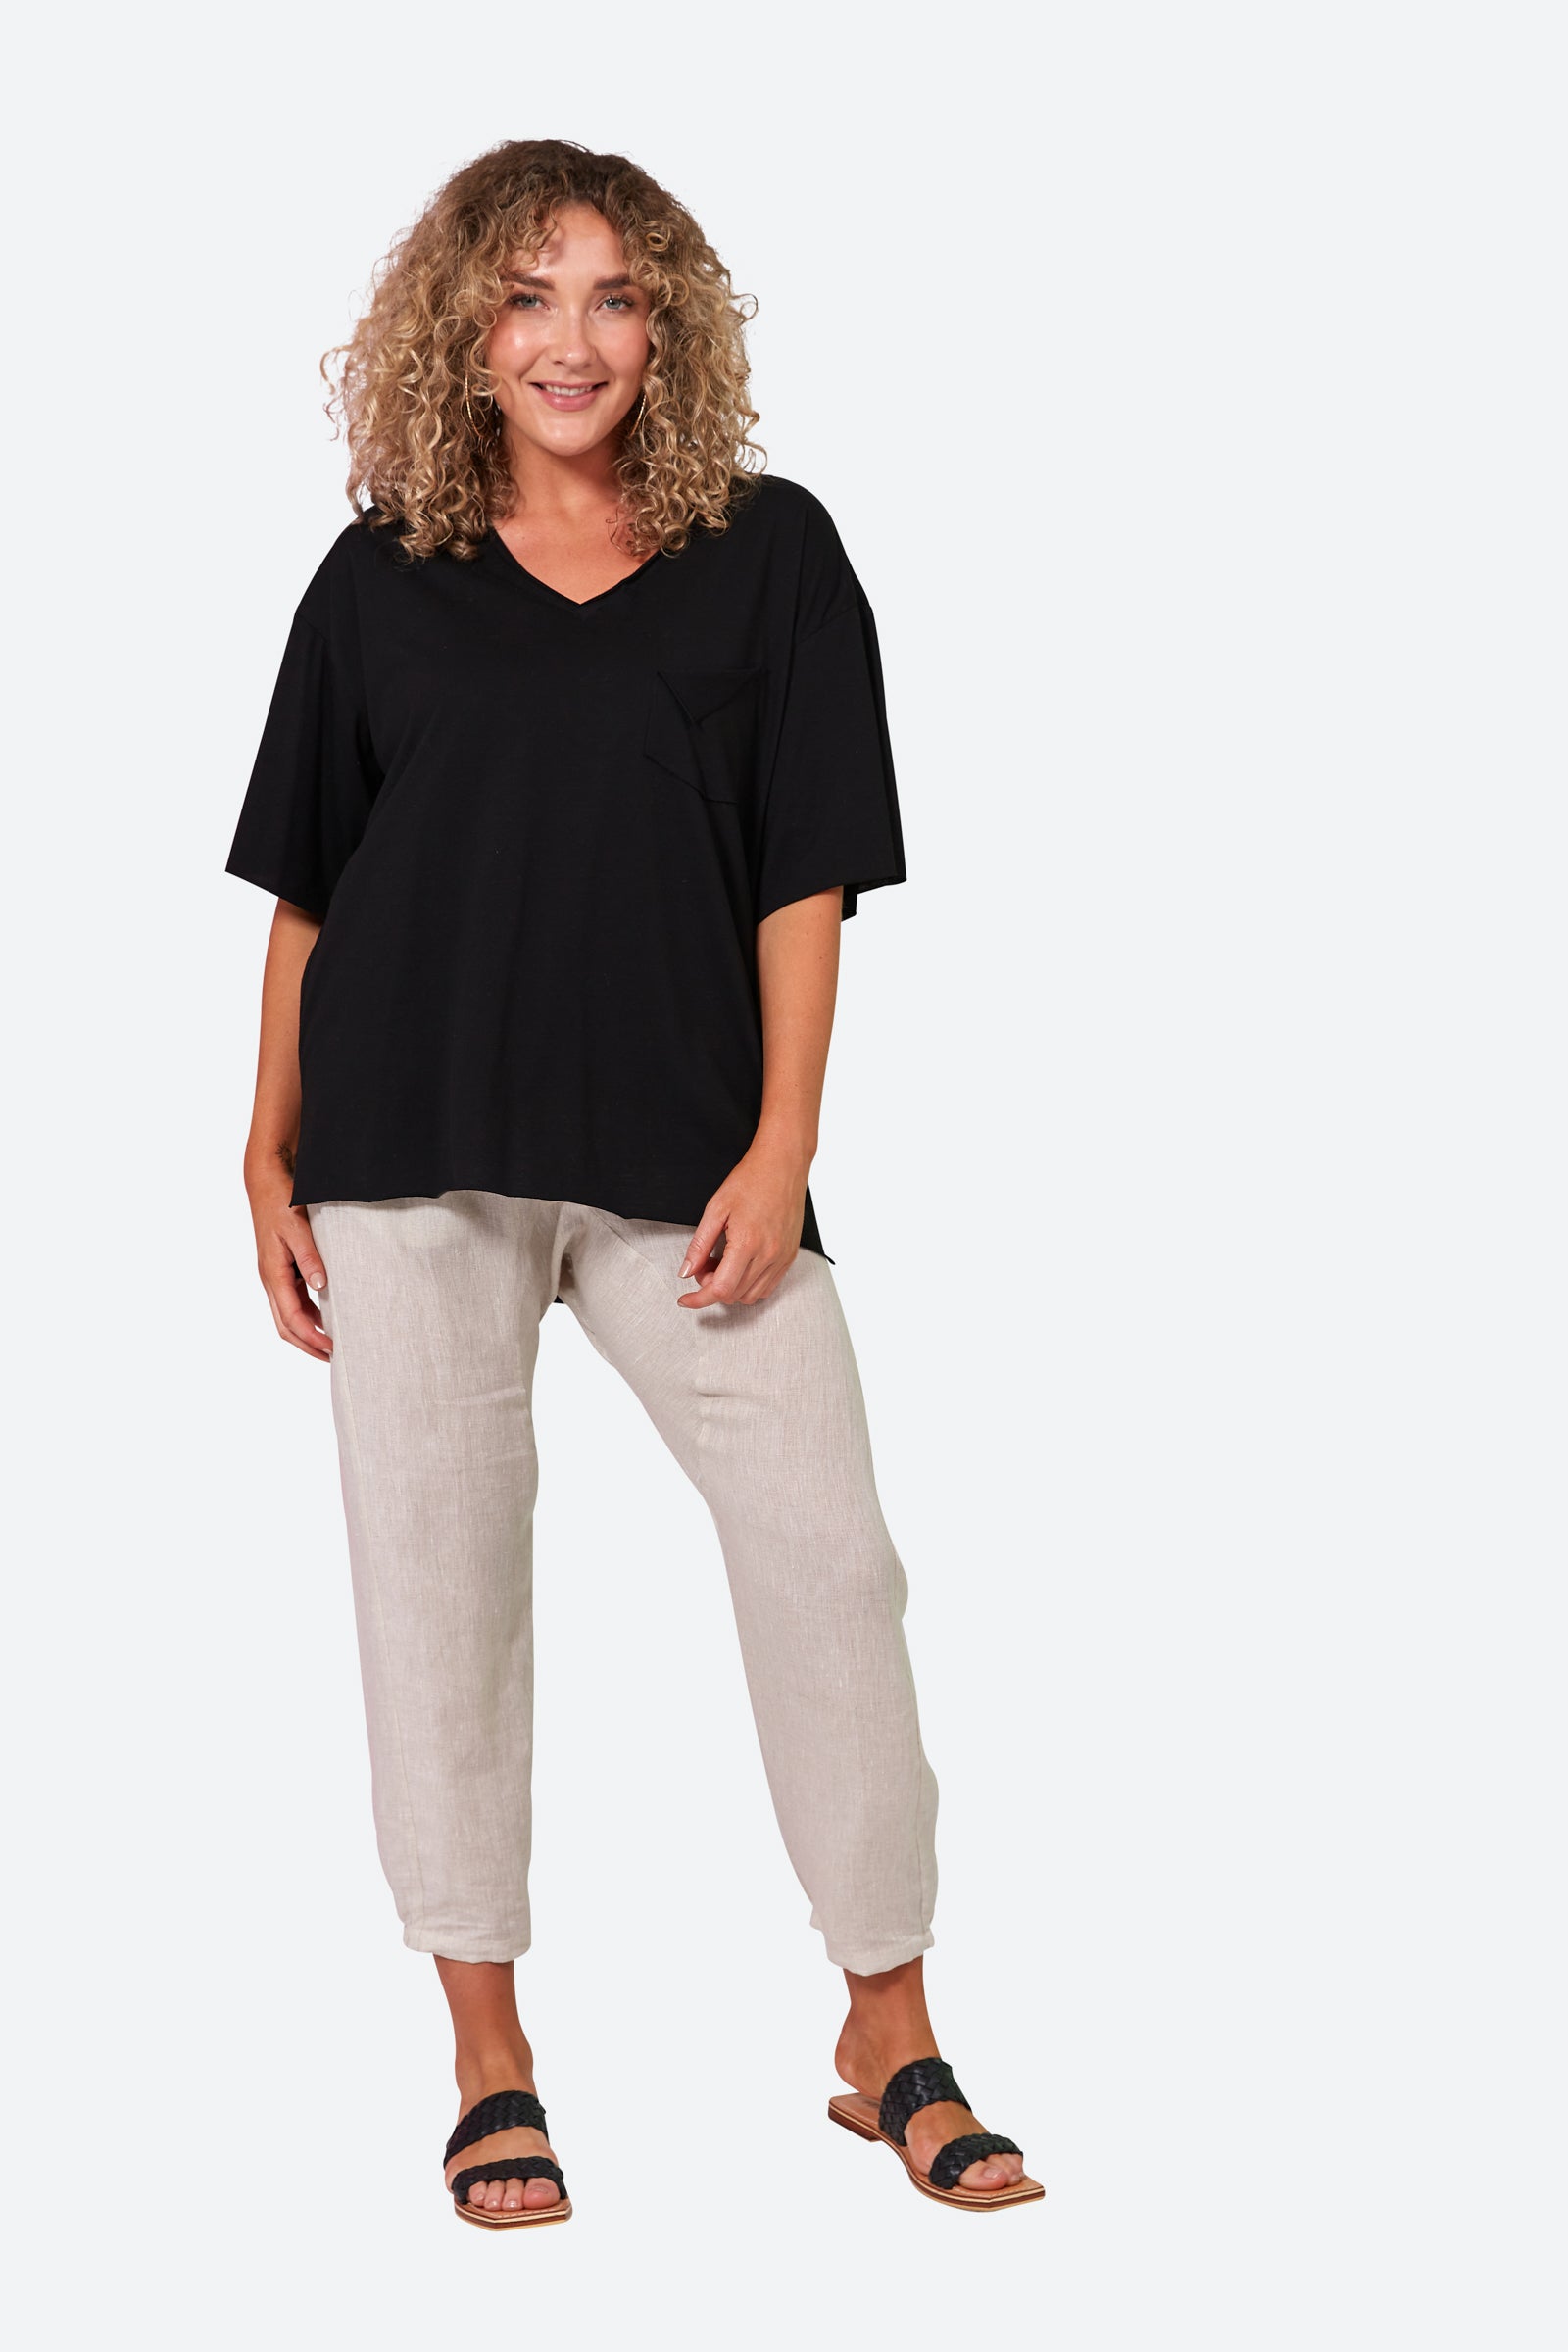 Studio Pocket Tshirt - Ebony - eb&ive Clothing - Top Tshirt S/S